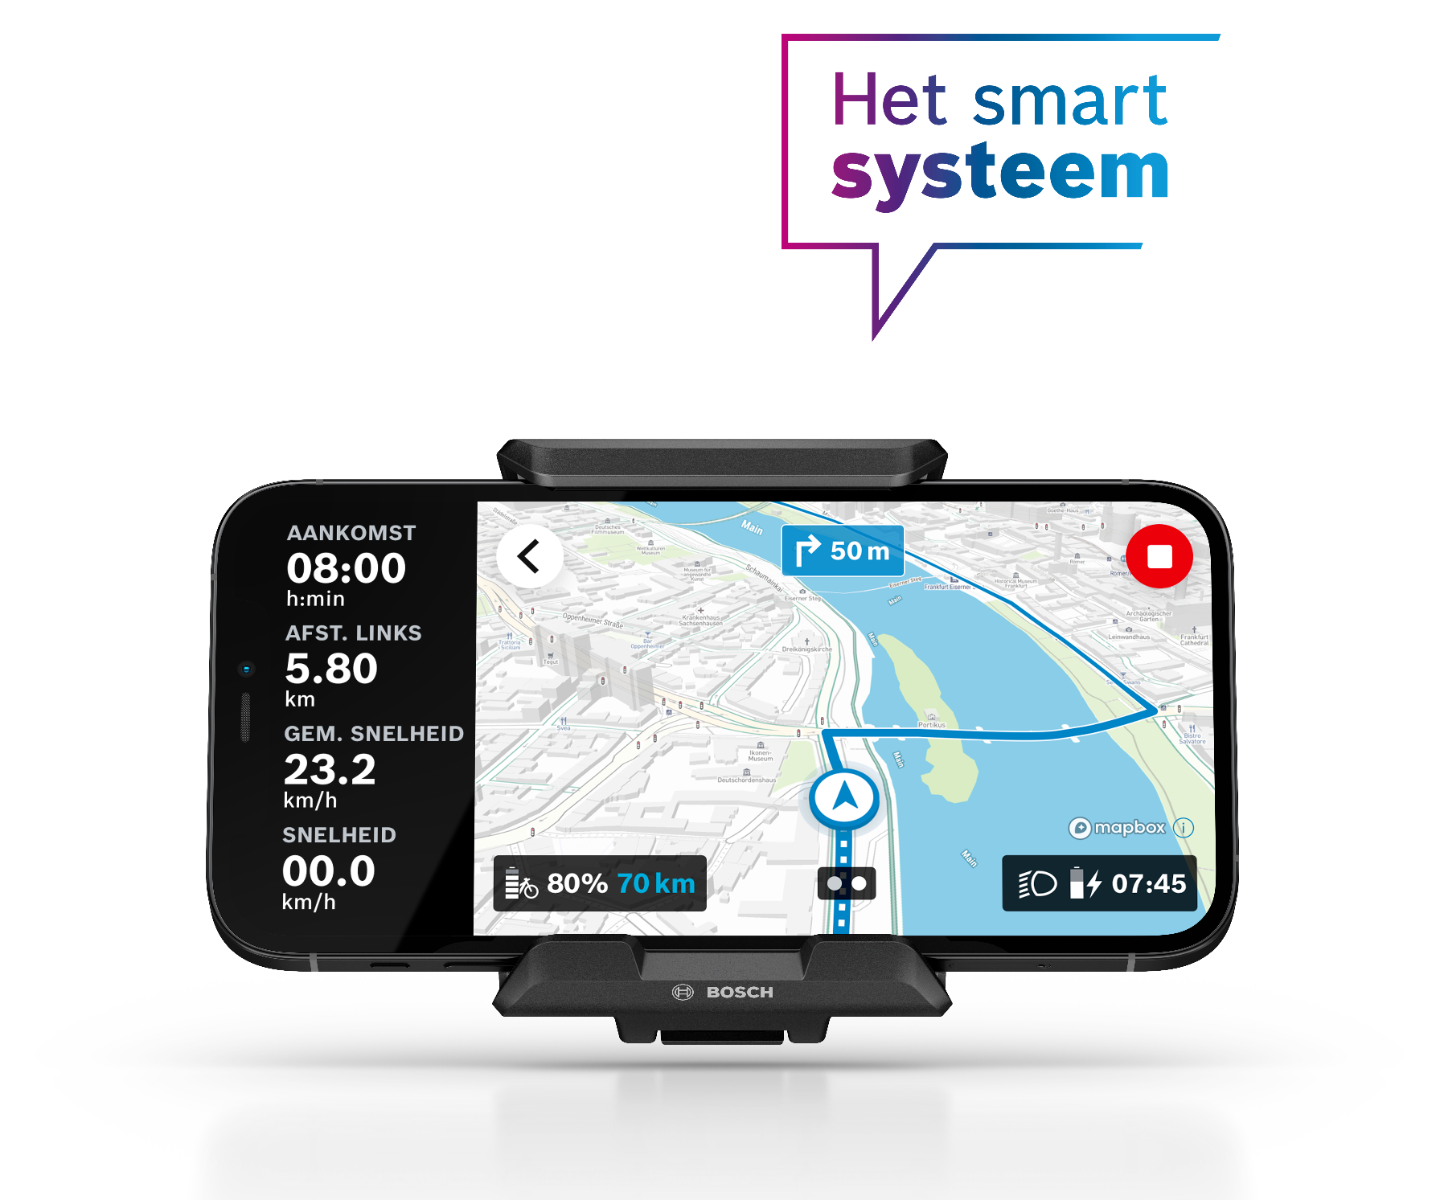 Vorderansicht des Bosch SmartphoneGrip mit Telefon. Dies zeigt die Navigationsfunktion.